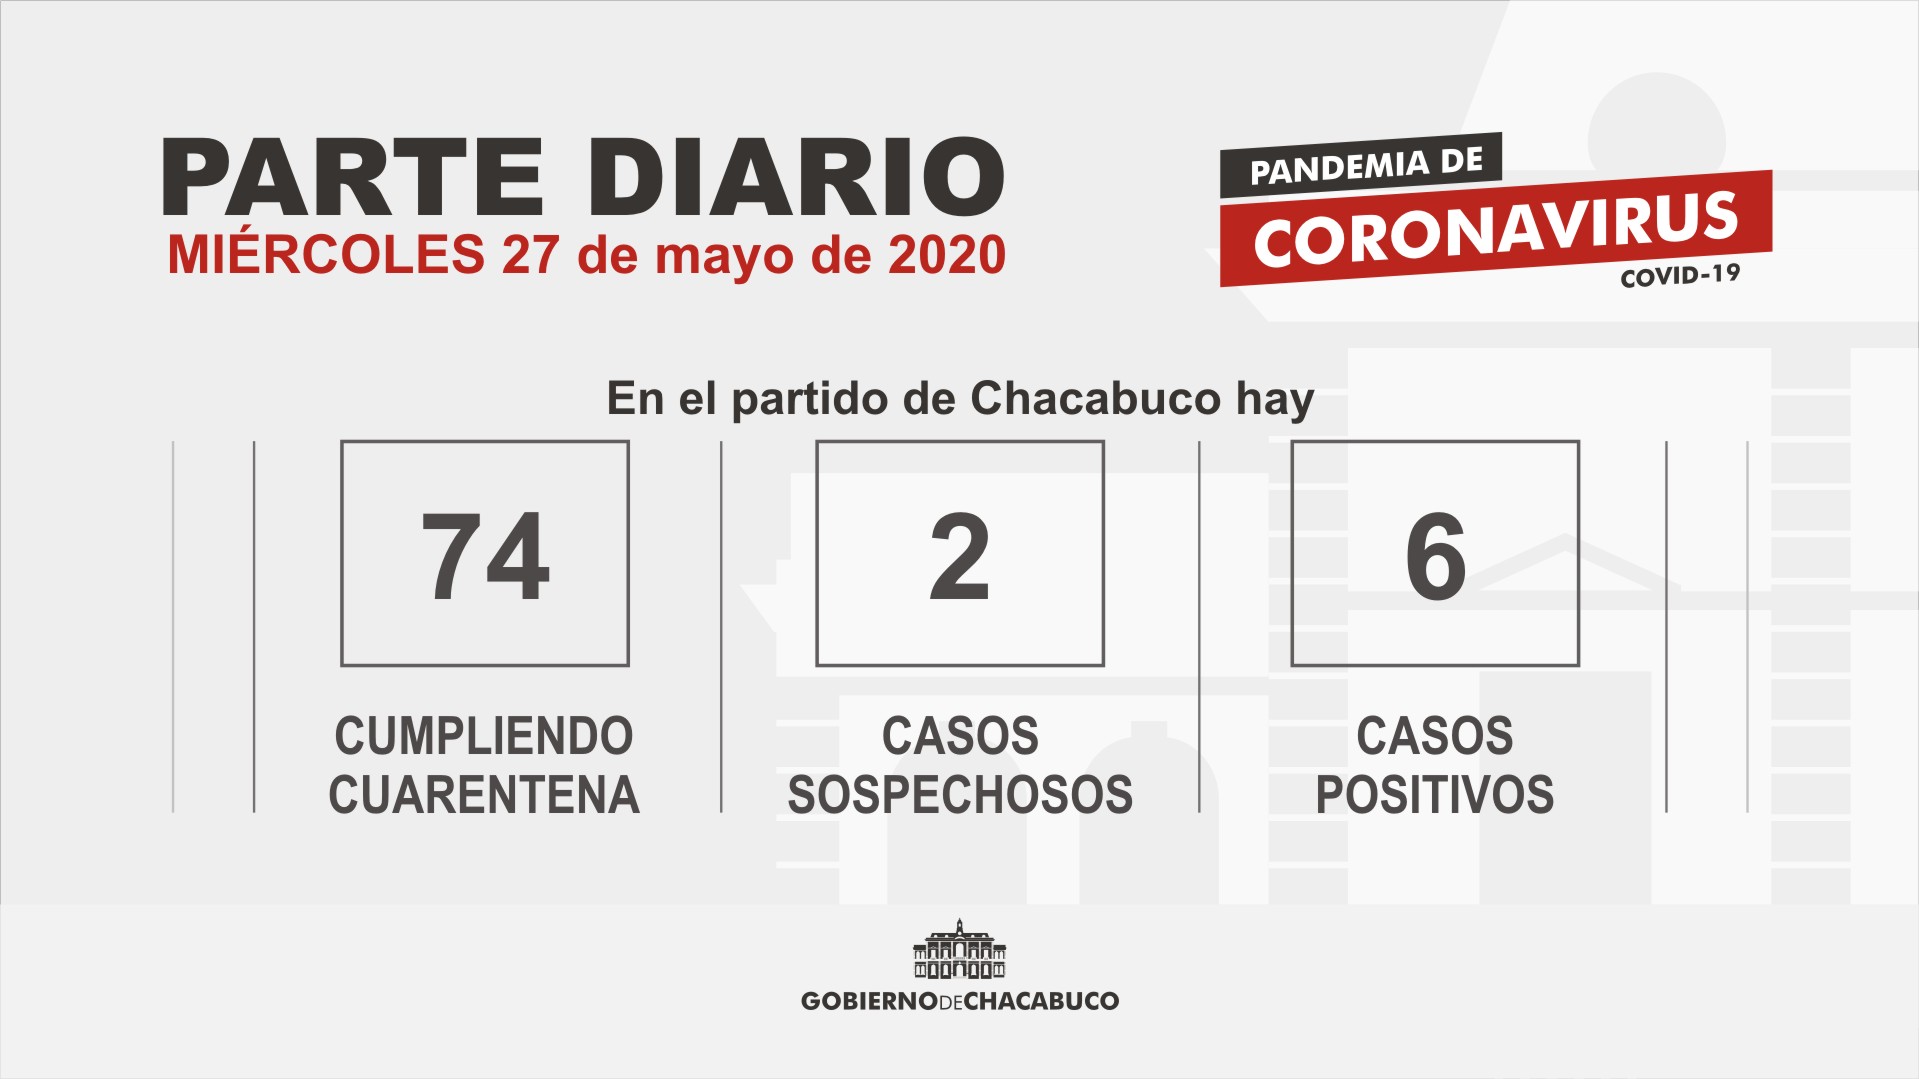 PARTE DIARIO 27/05) Coronavirus: Partido de Chacabuco